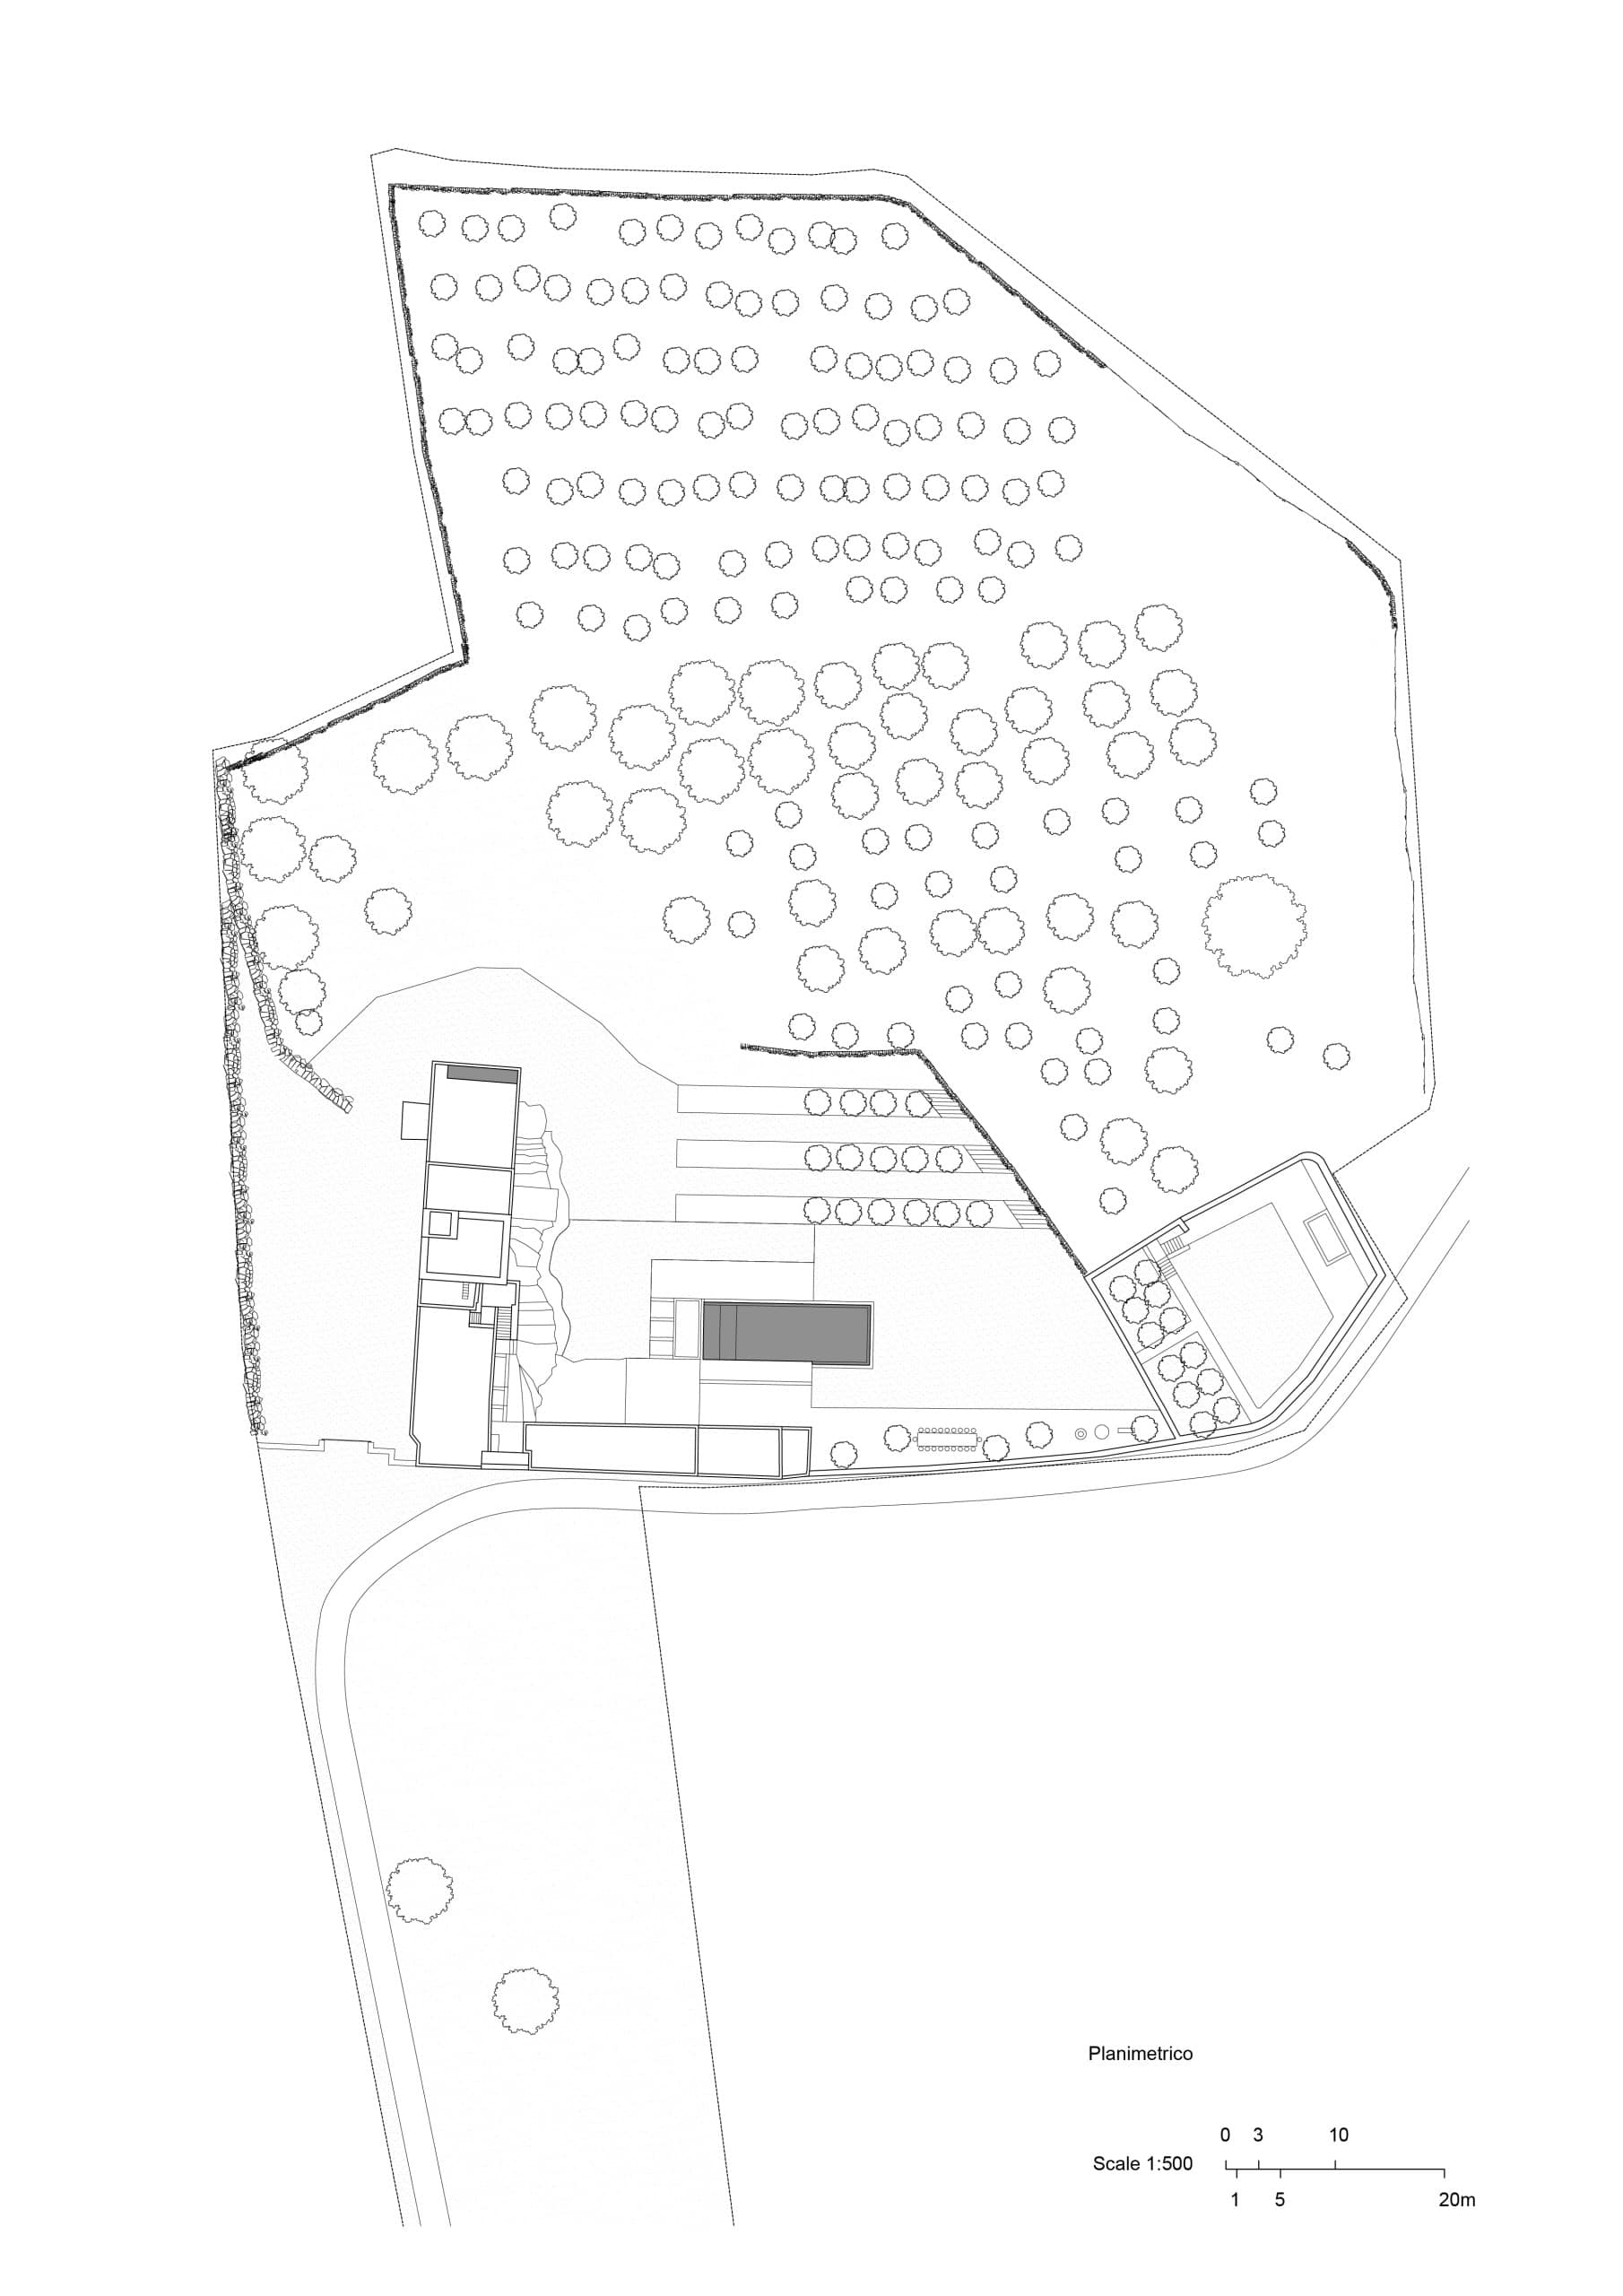 Situationsplan, Masseria Belvedere, Carovigno, Zeichnung: Valari